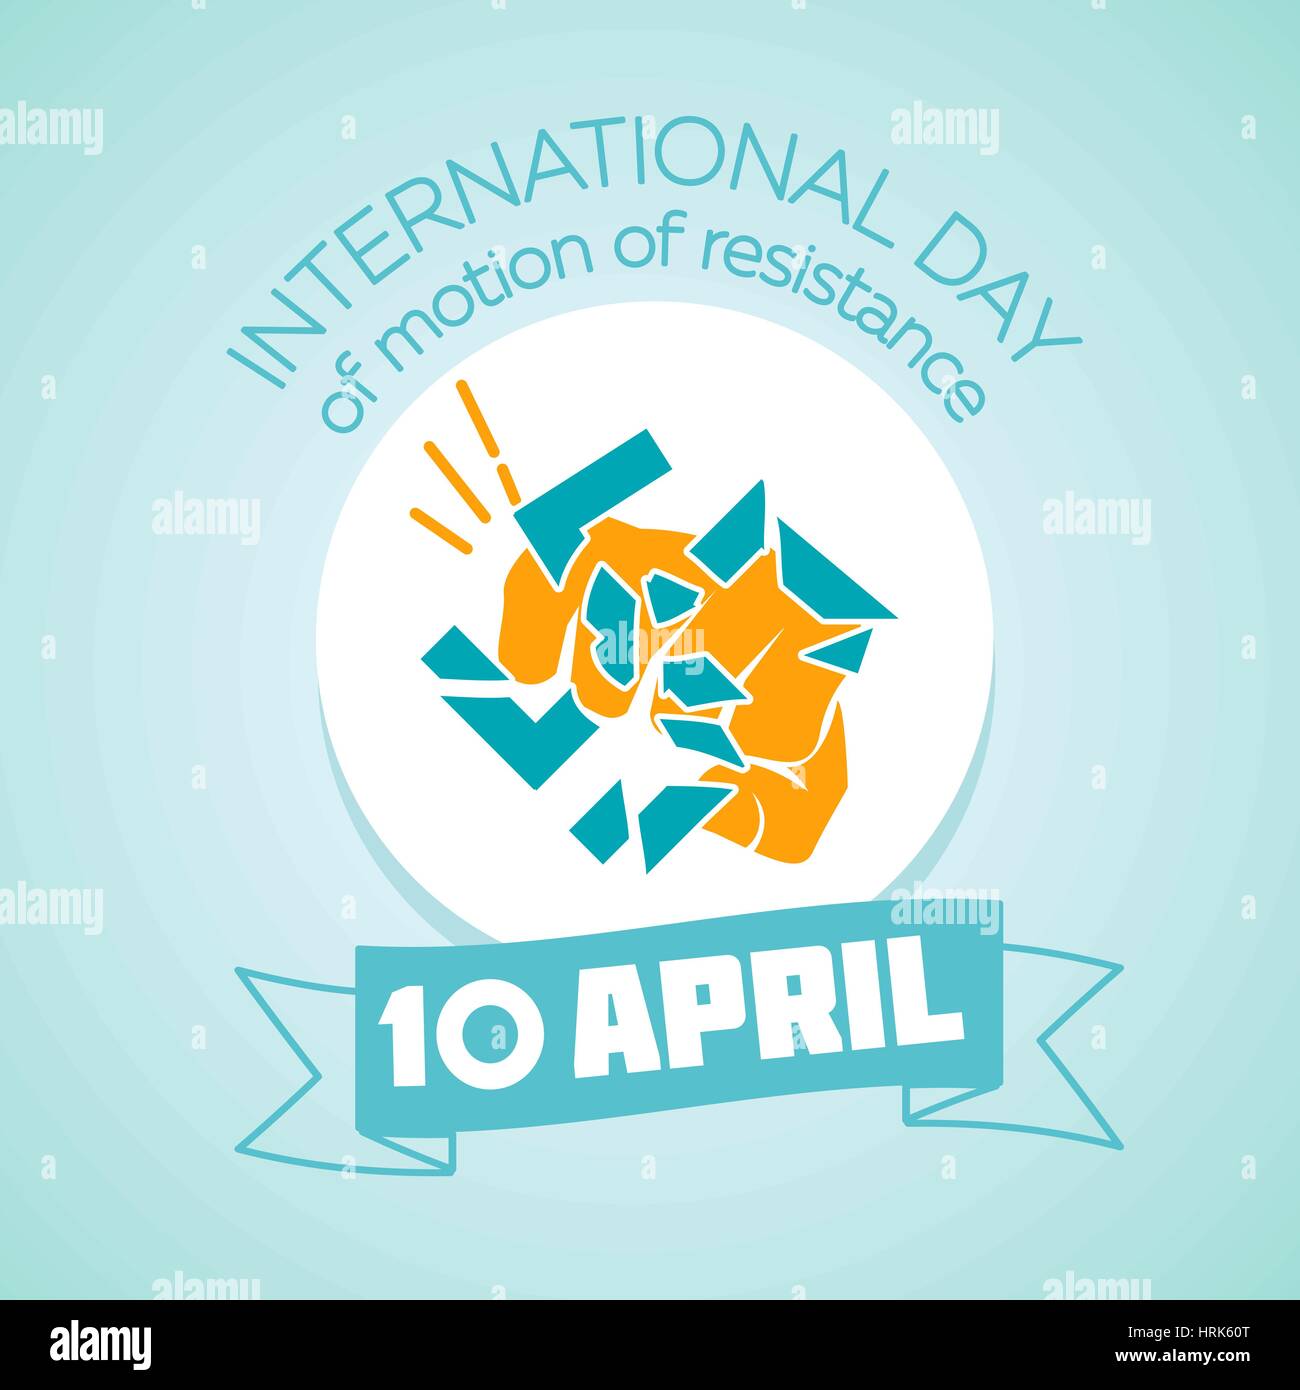 Kalender für jeden Tag am 10. April. Urlaub - internationaler Tag der Bewegung des Widerstands. Symbol in der linearen Stil Stock Vektor